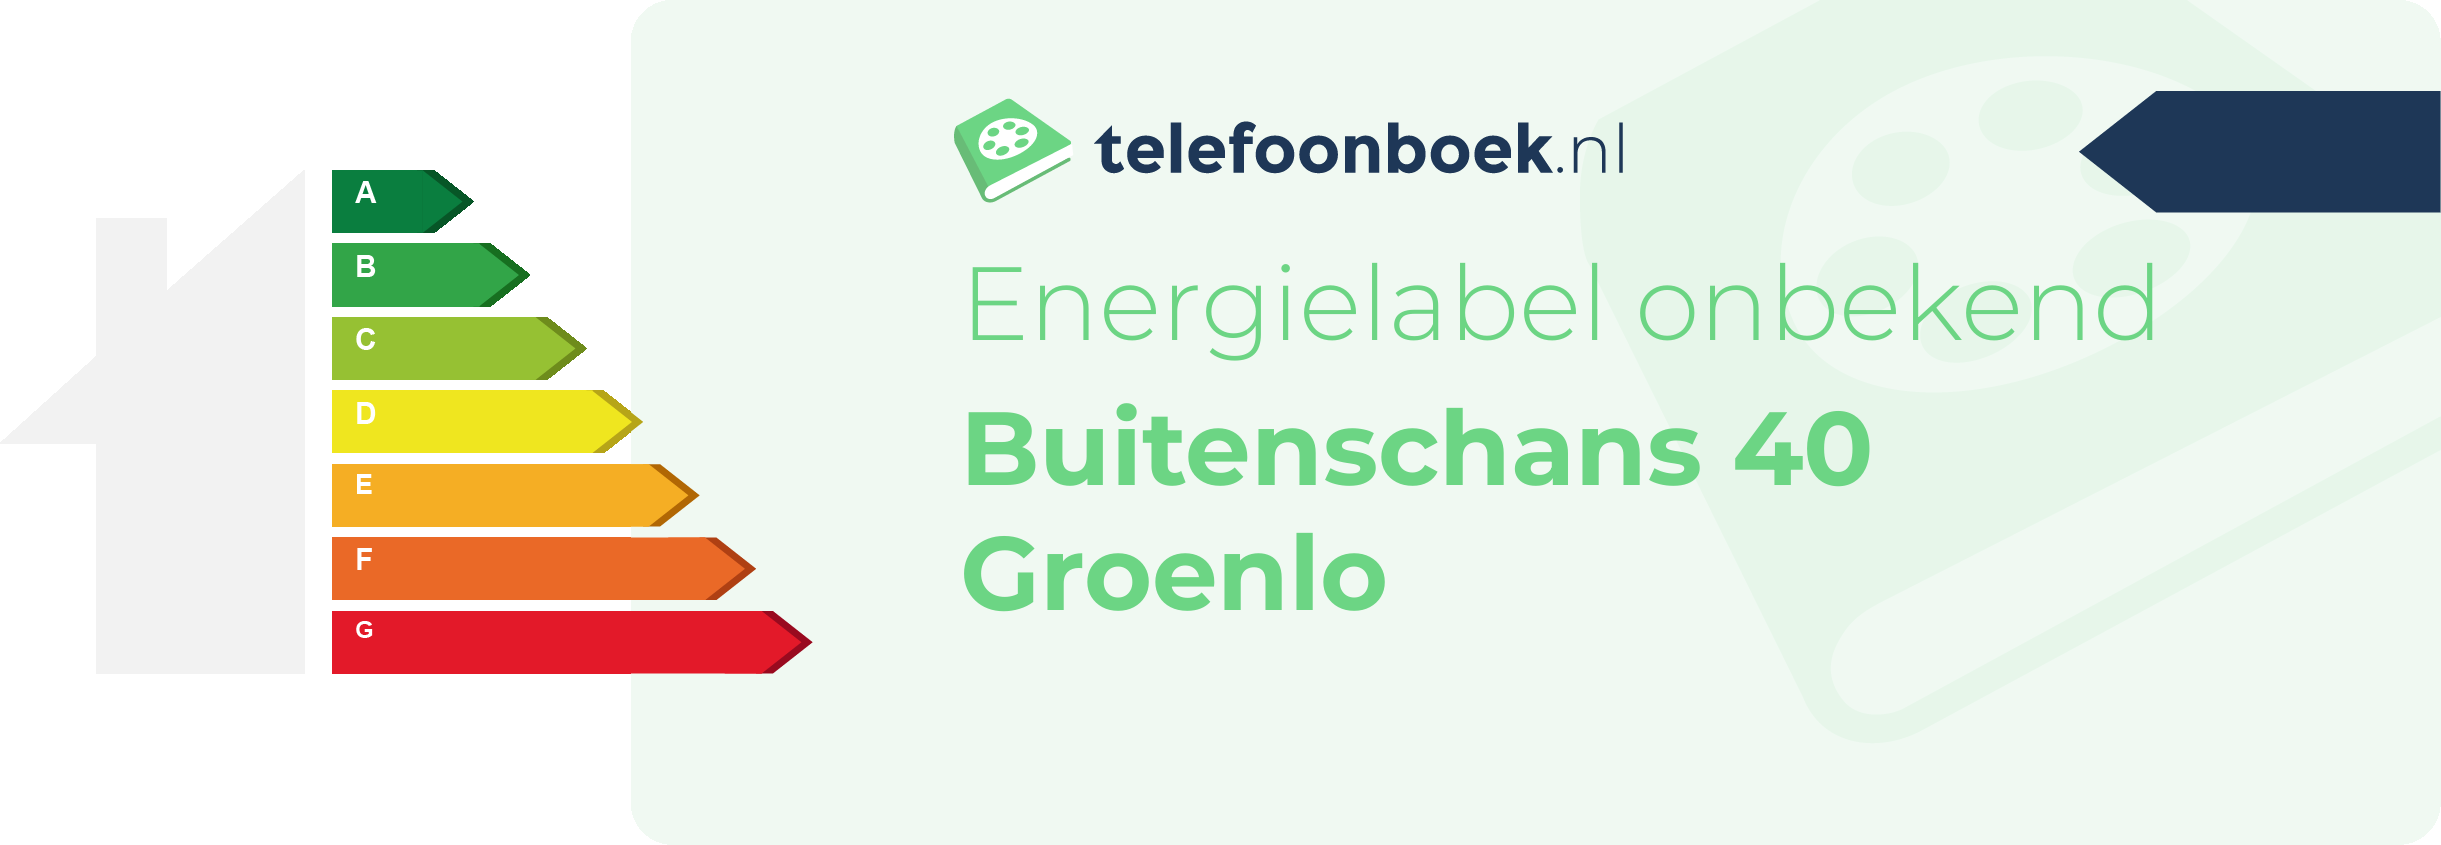 Energielabel Buitenschans 40 Groenlo